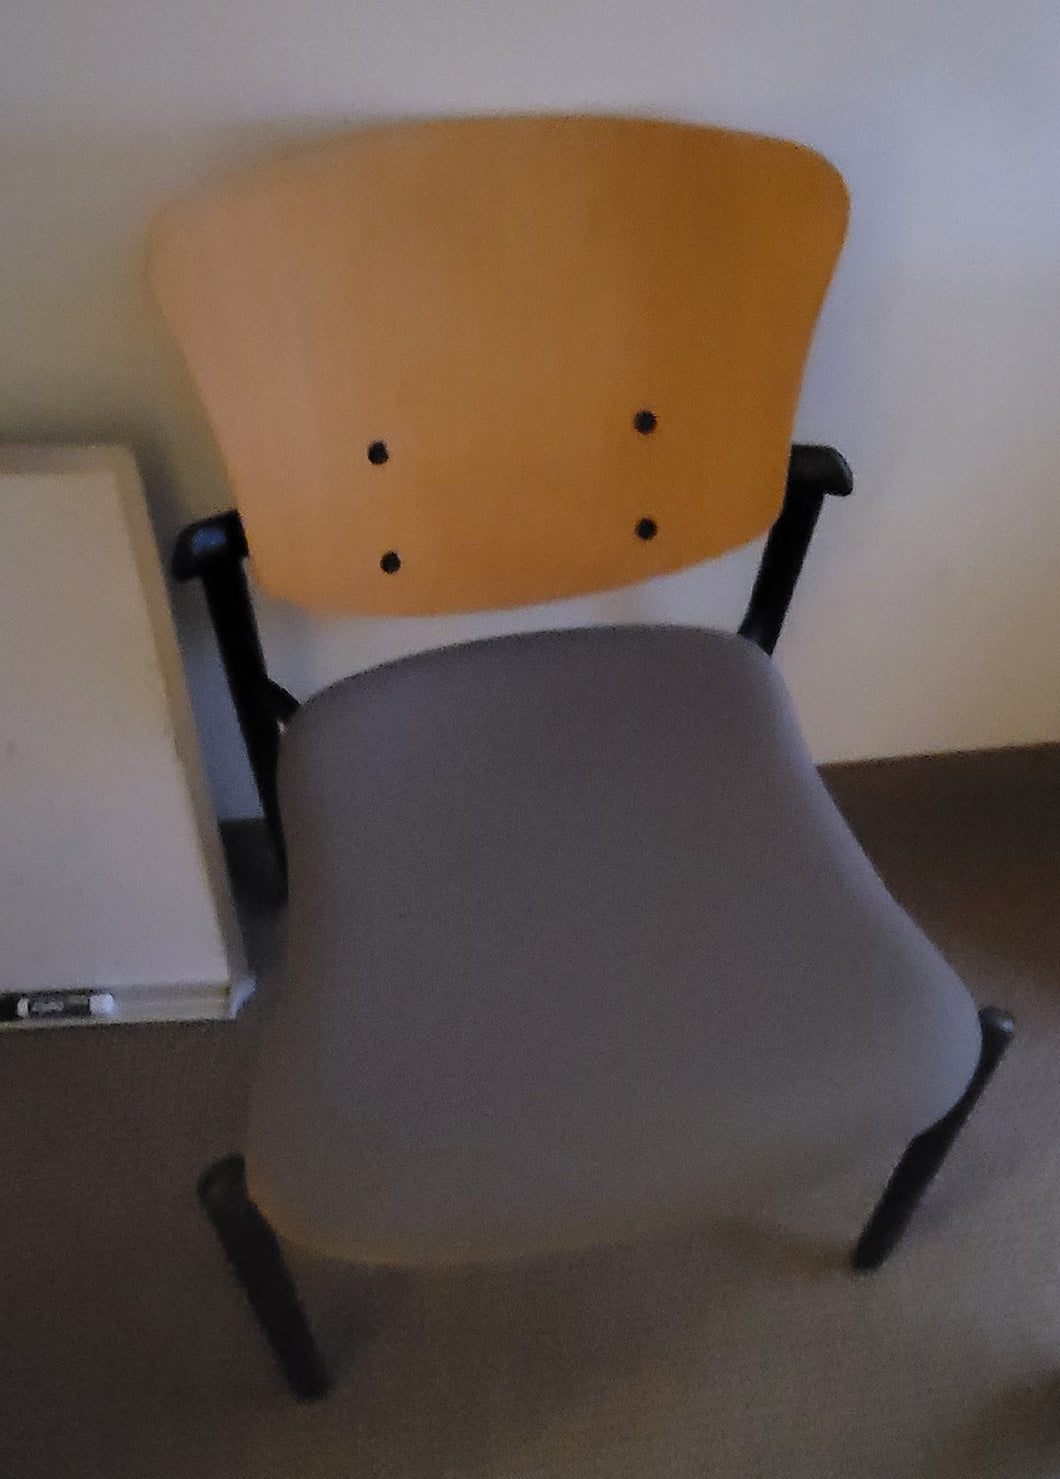 Used Haworth Improv Side Chair